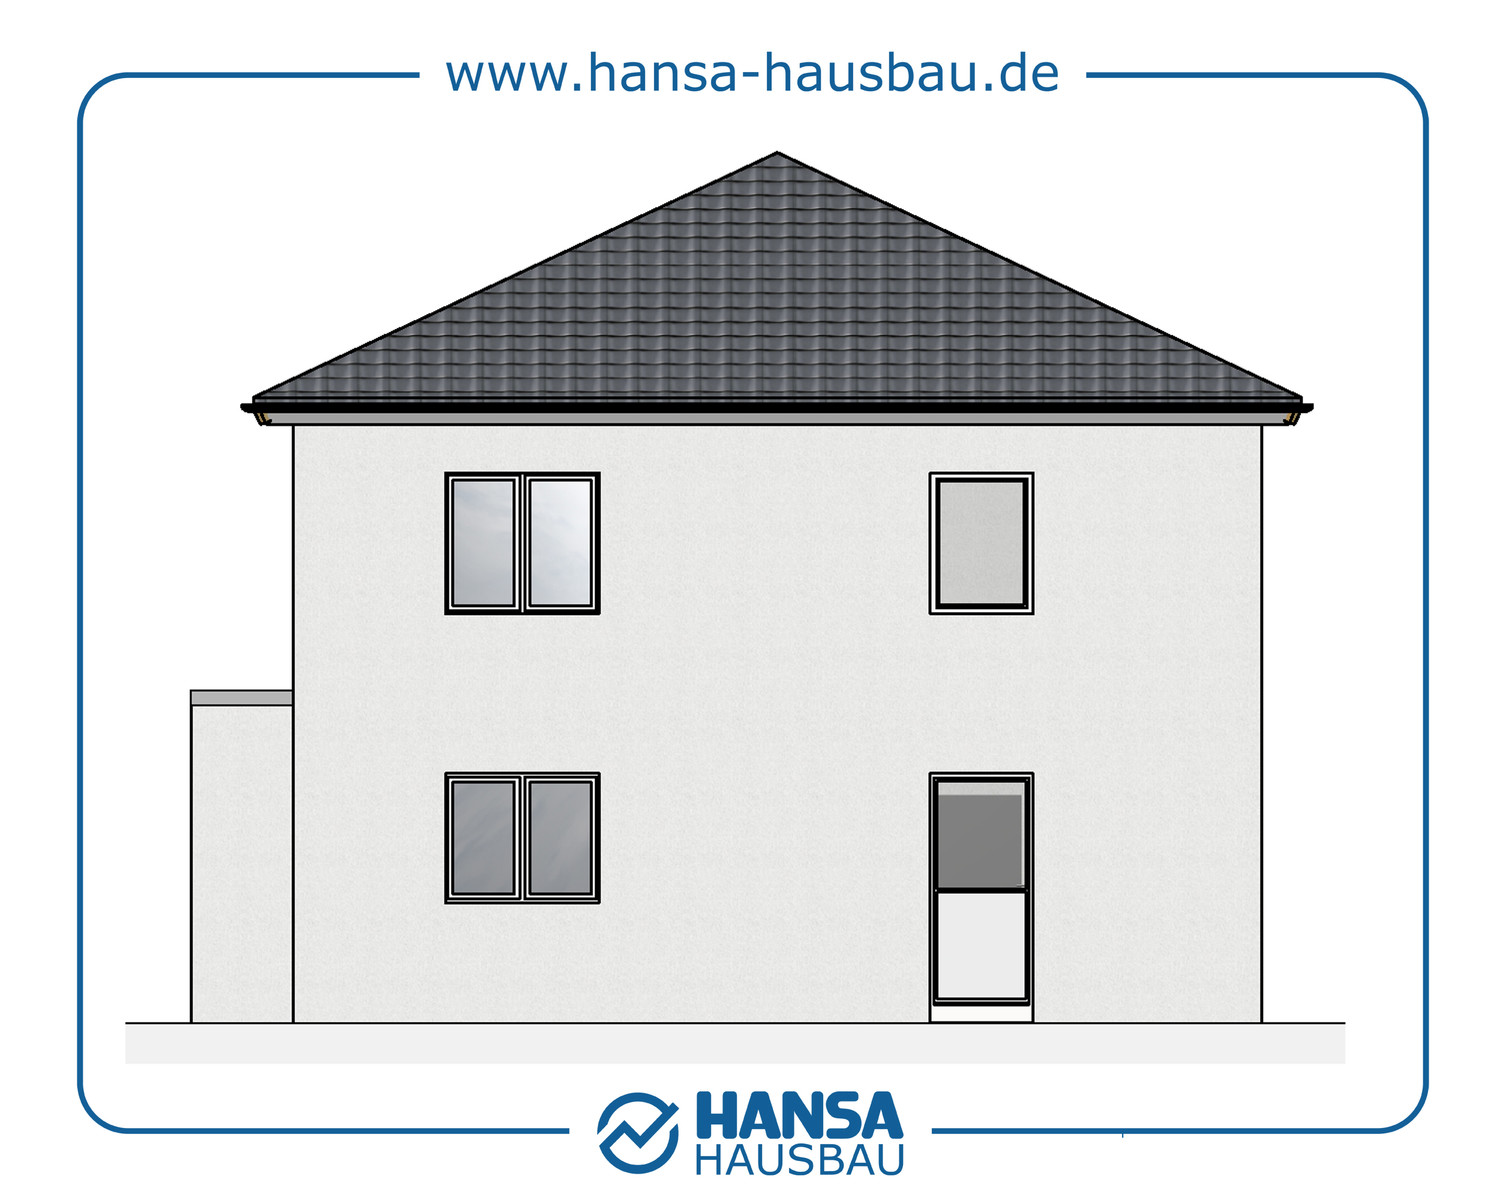 Hansa Hausbau Stadtvilla 144 M² Neubau Hamburg 02